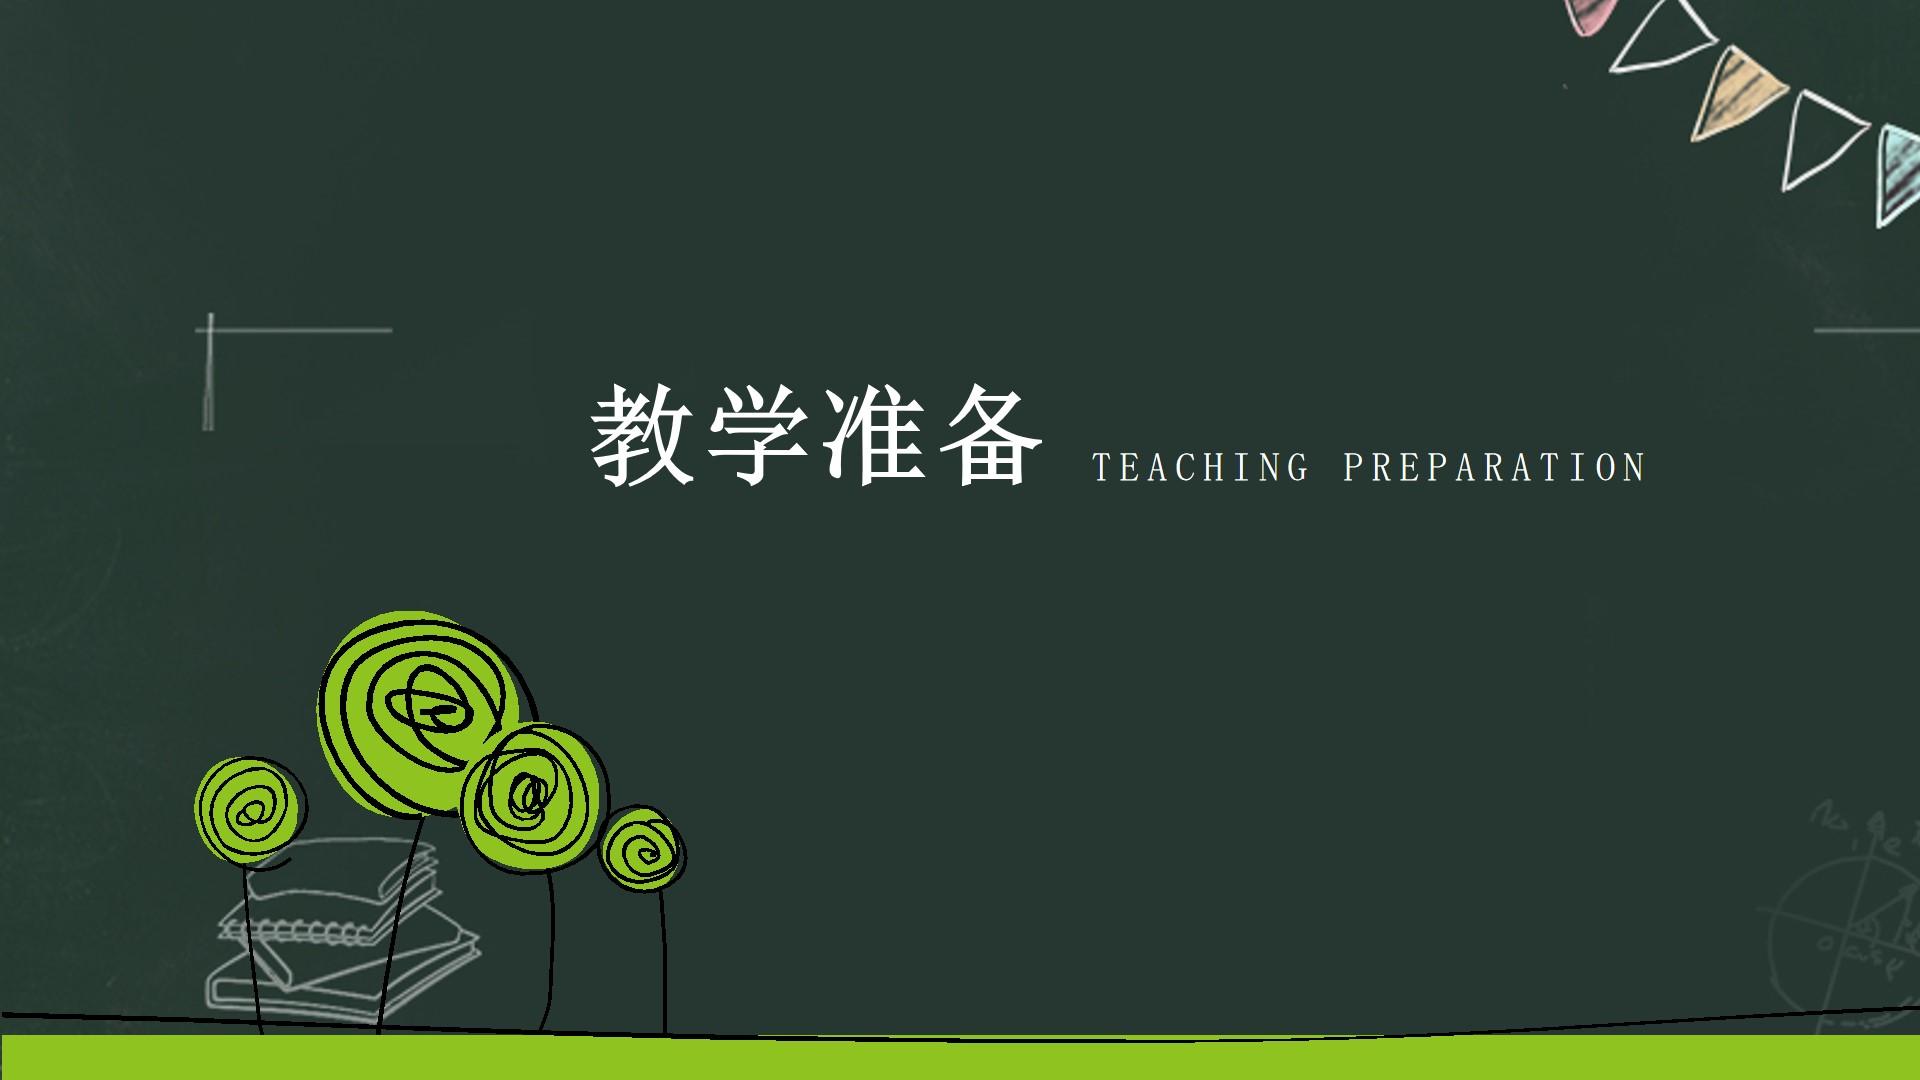 教育教学绿色黑色白色简洁突出teaching preparation云素材PPT模板1672662551071